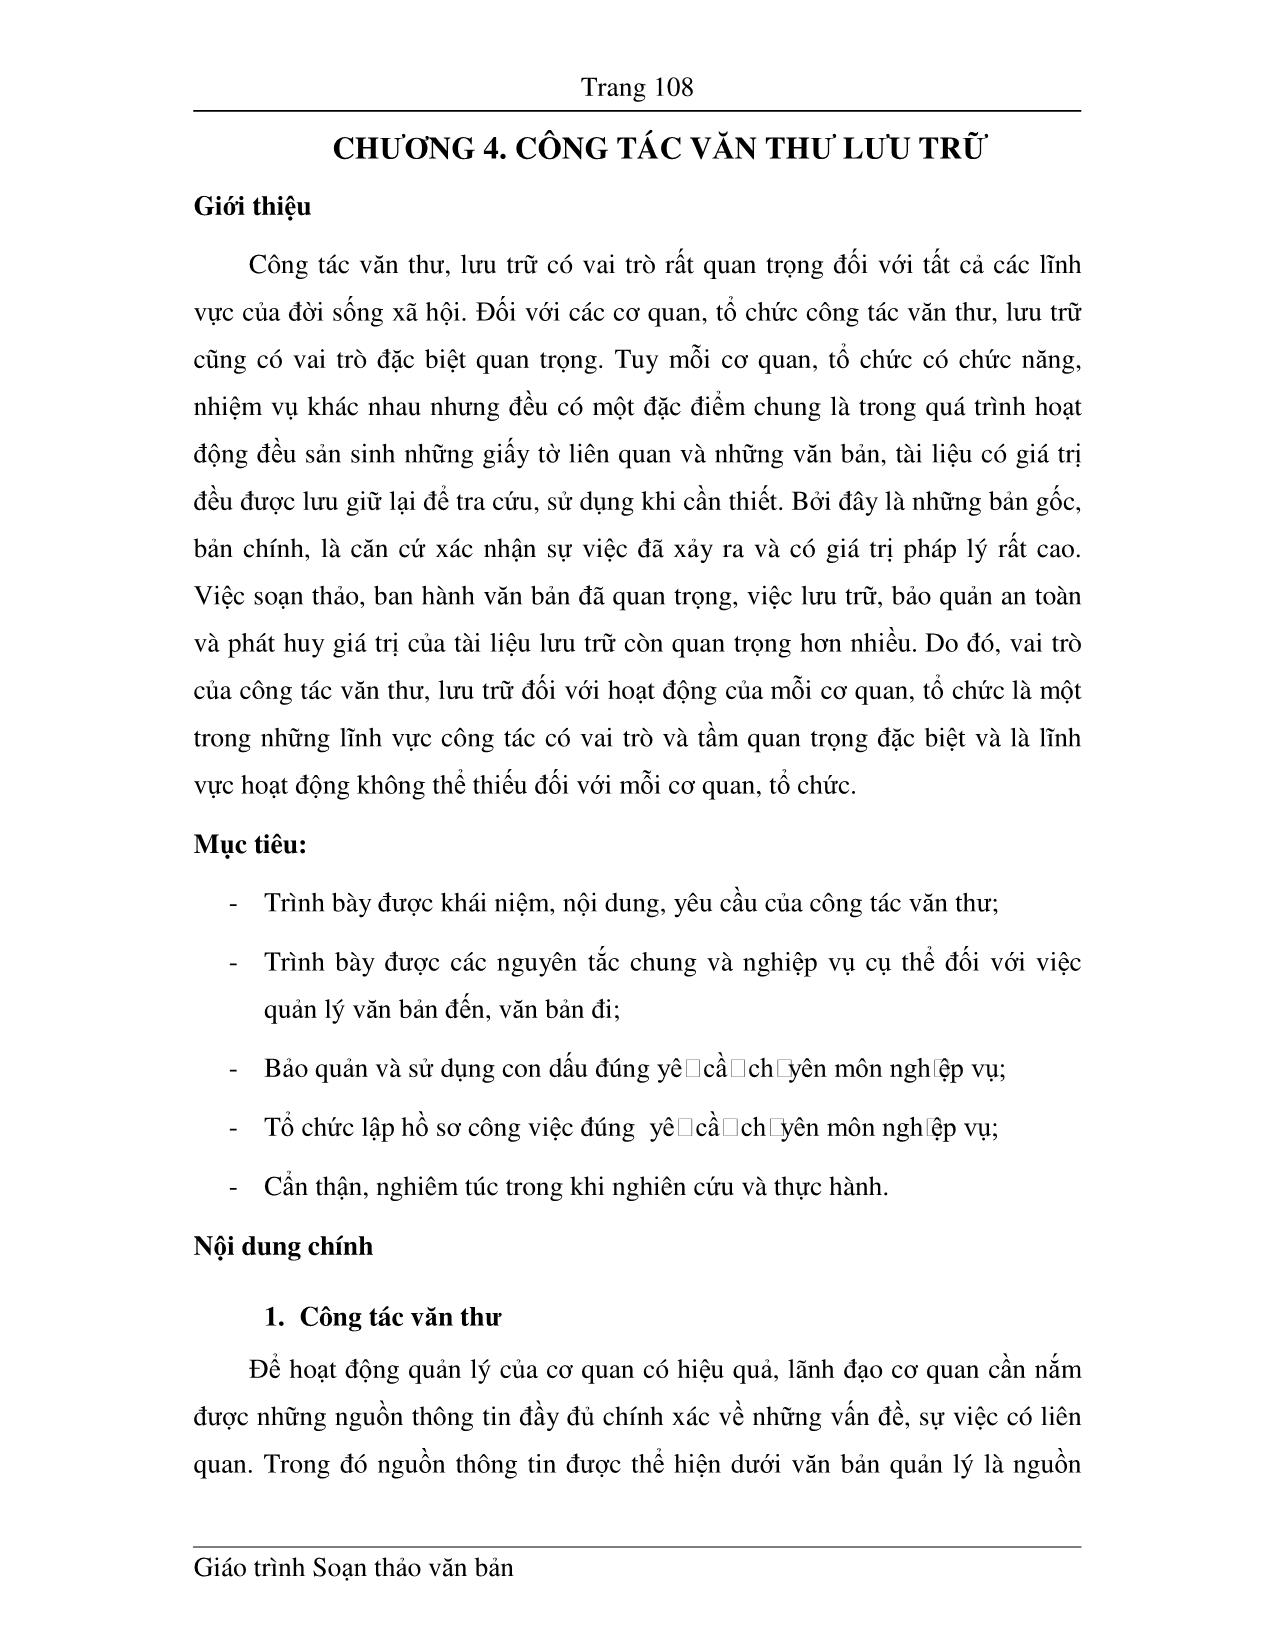 Giáo trình Soạn thảo văn bản (Phần 2) trang 1